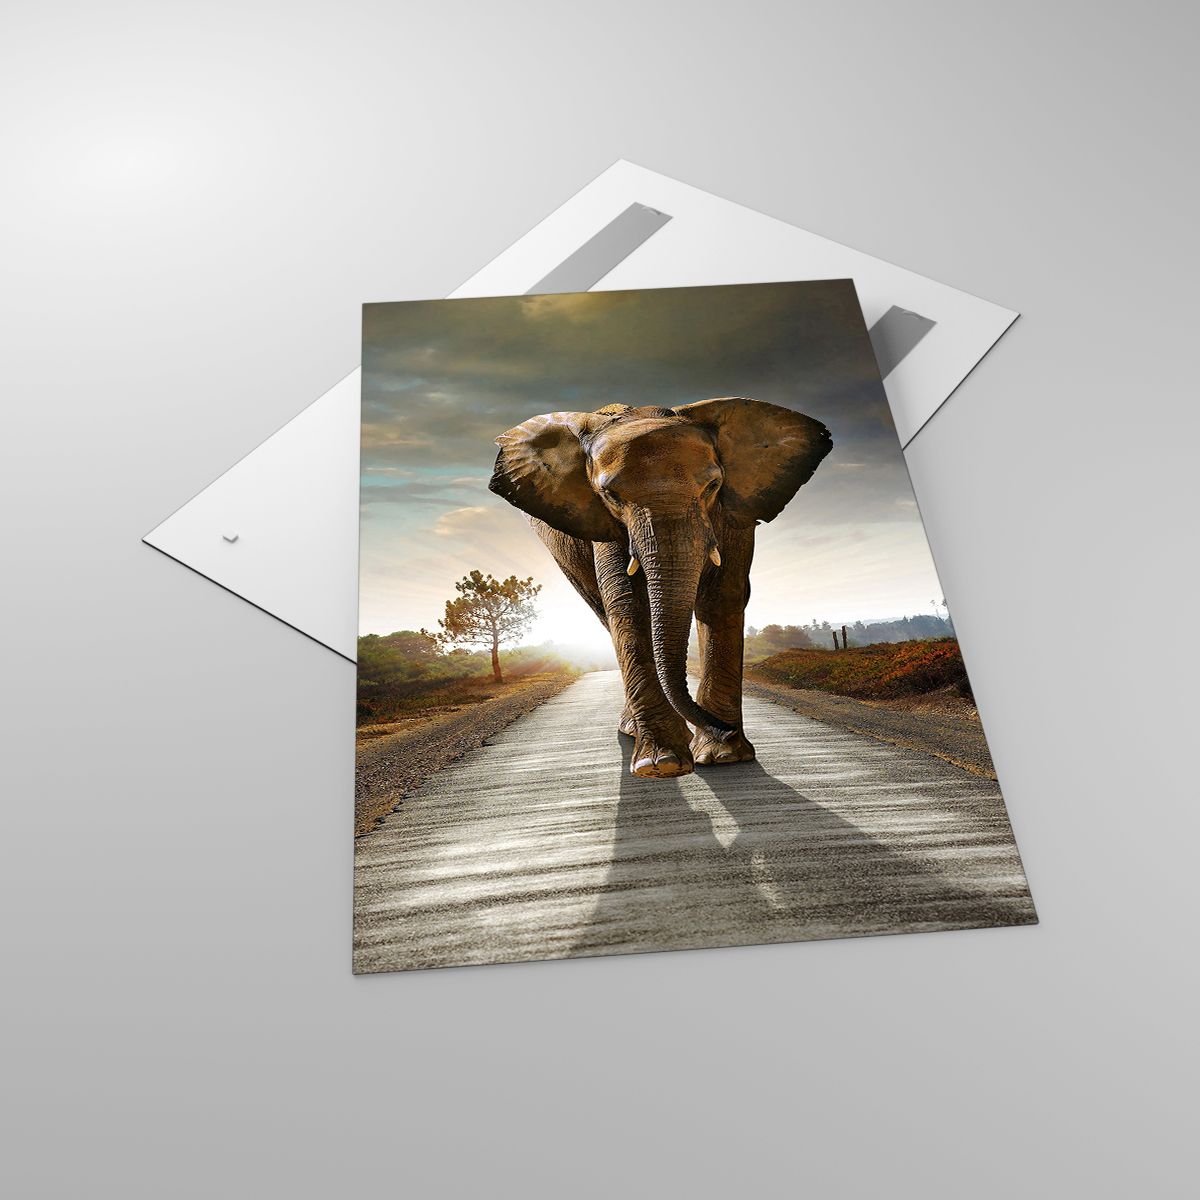 Quadri Elefante, Quadri Paesaggio, Quadri Natura, Quadri Alberi, Quadri Africa